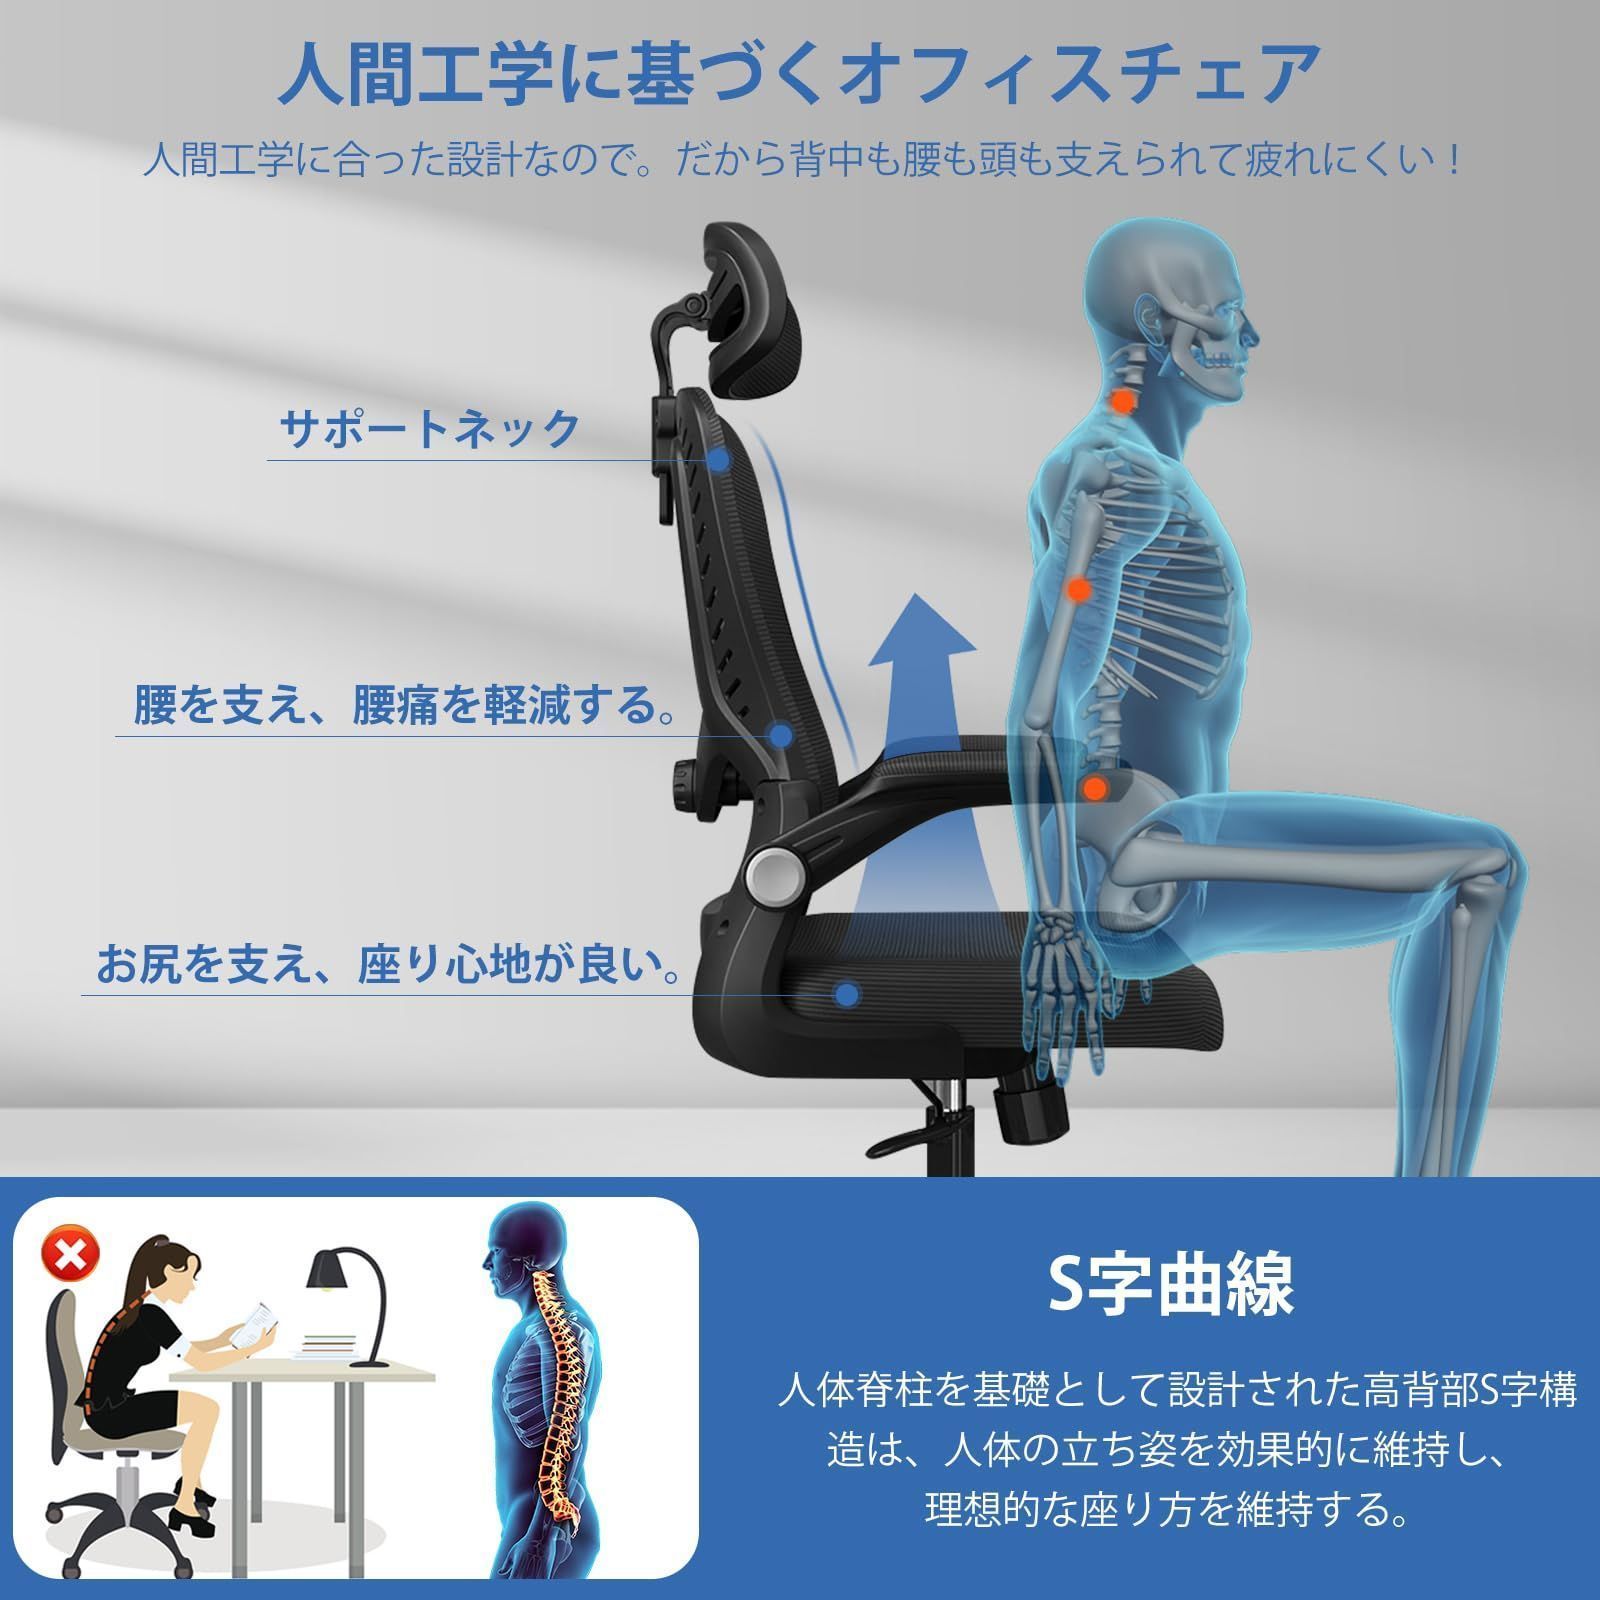 Fuwata オフィスチェア 椅子 パソコンチェア 人間工学デスクチェア S字構